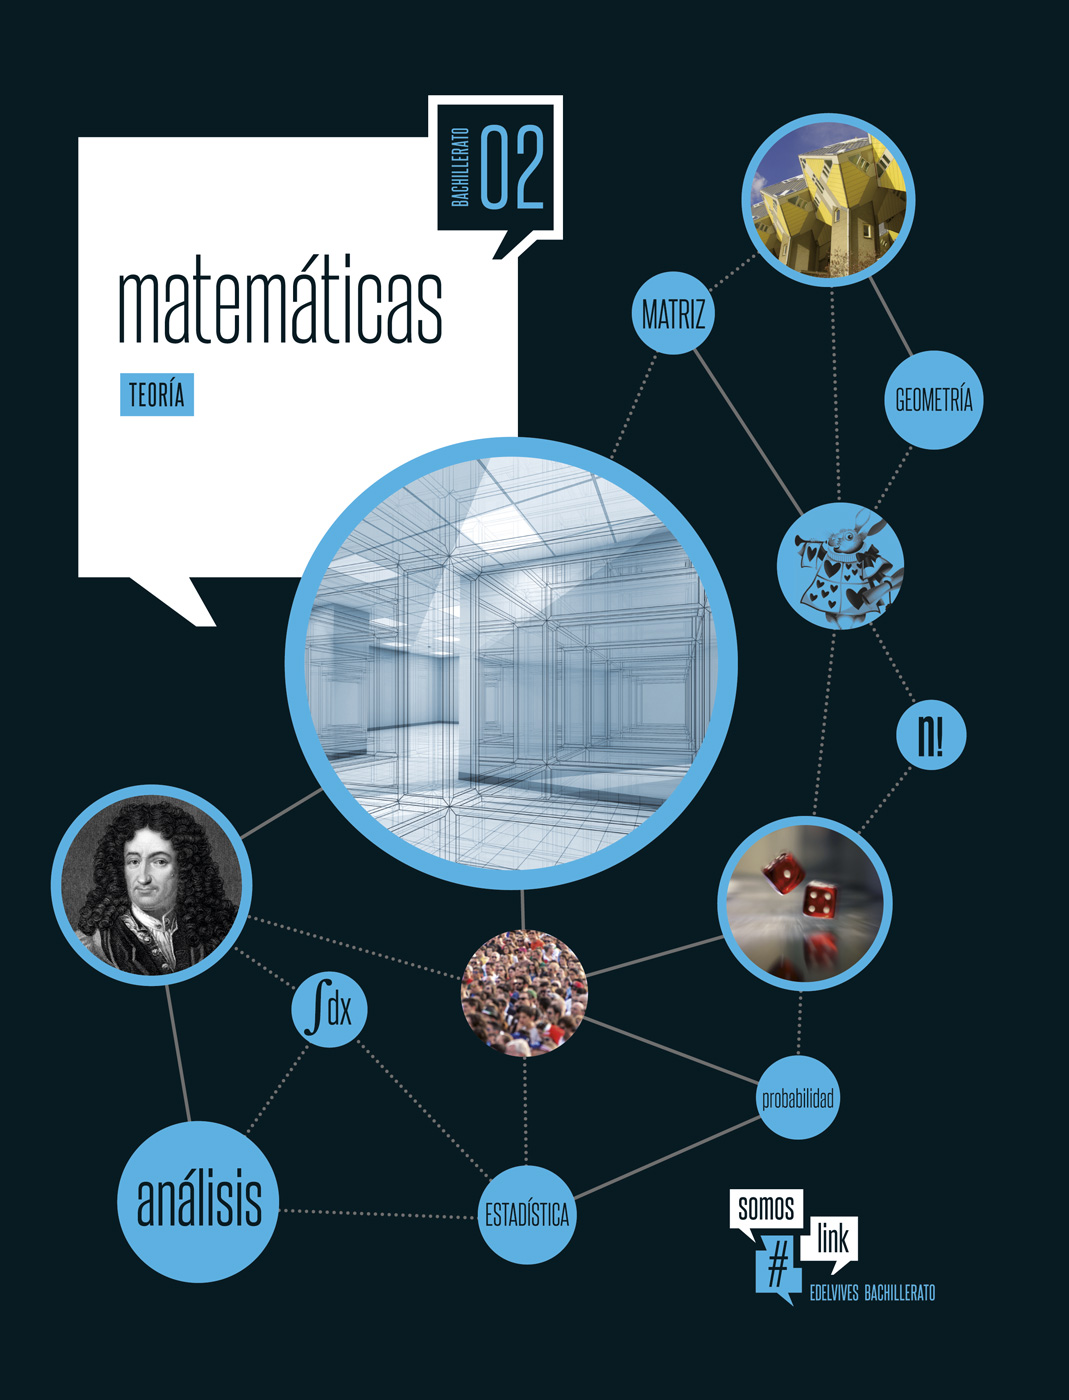 Solucionario Matematicas 2 Bachillerato Edelvives Somos Link PDF Ejercicios Resueltos-pdf